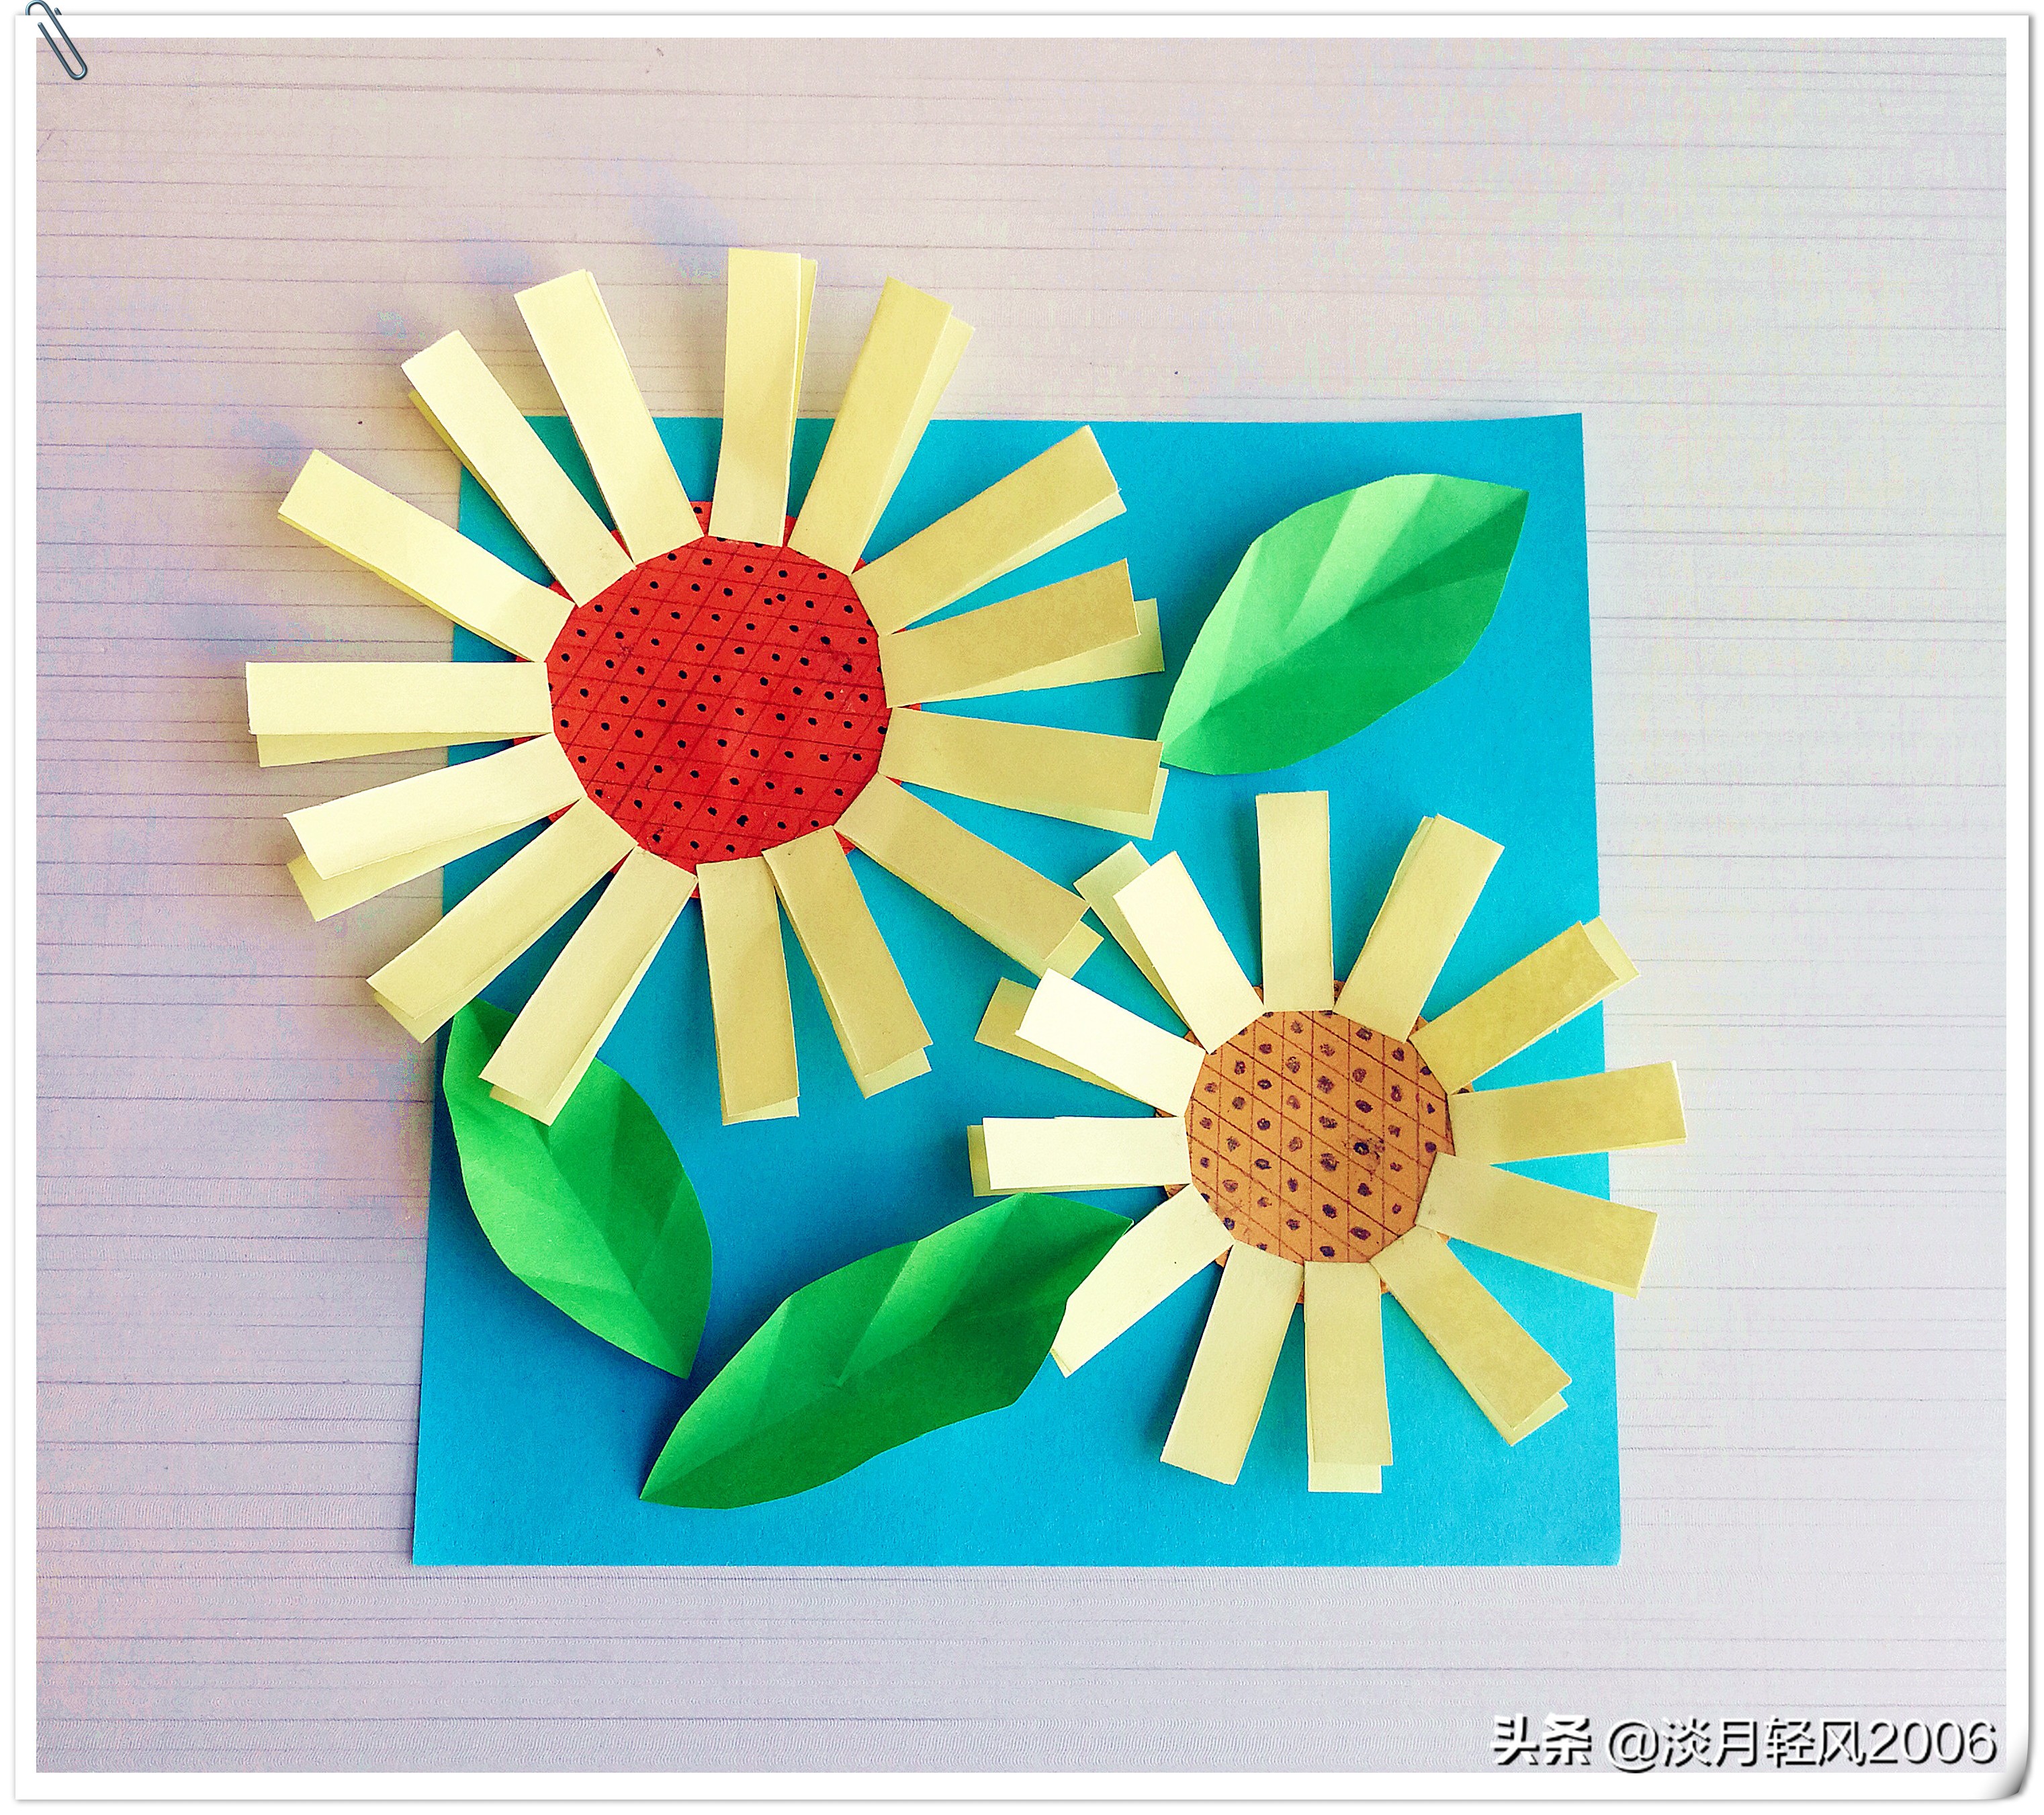 幼儿小手工,简单卡纸手工,用彩色卡纸粘贴向日葵,好学又漂亮